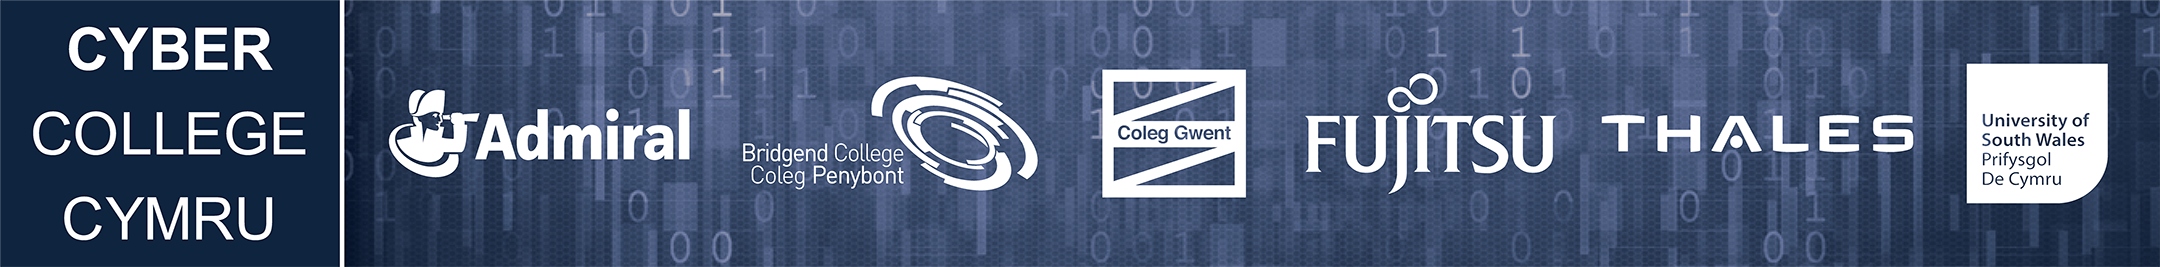 Cyber College Cymru logos